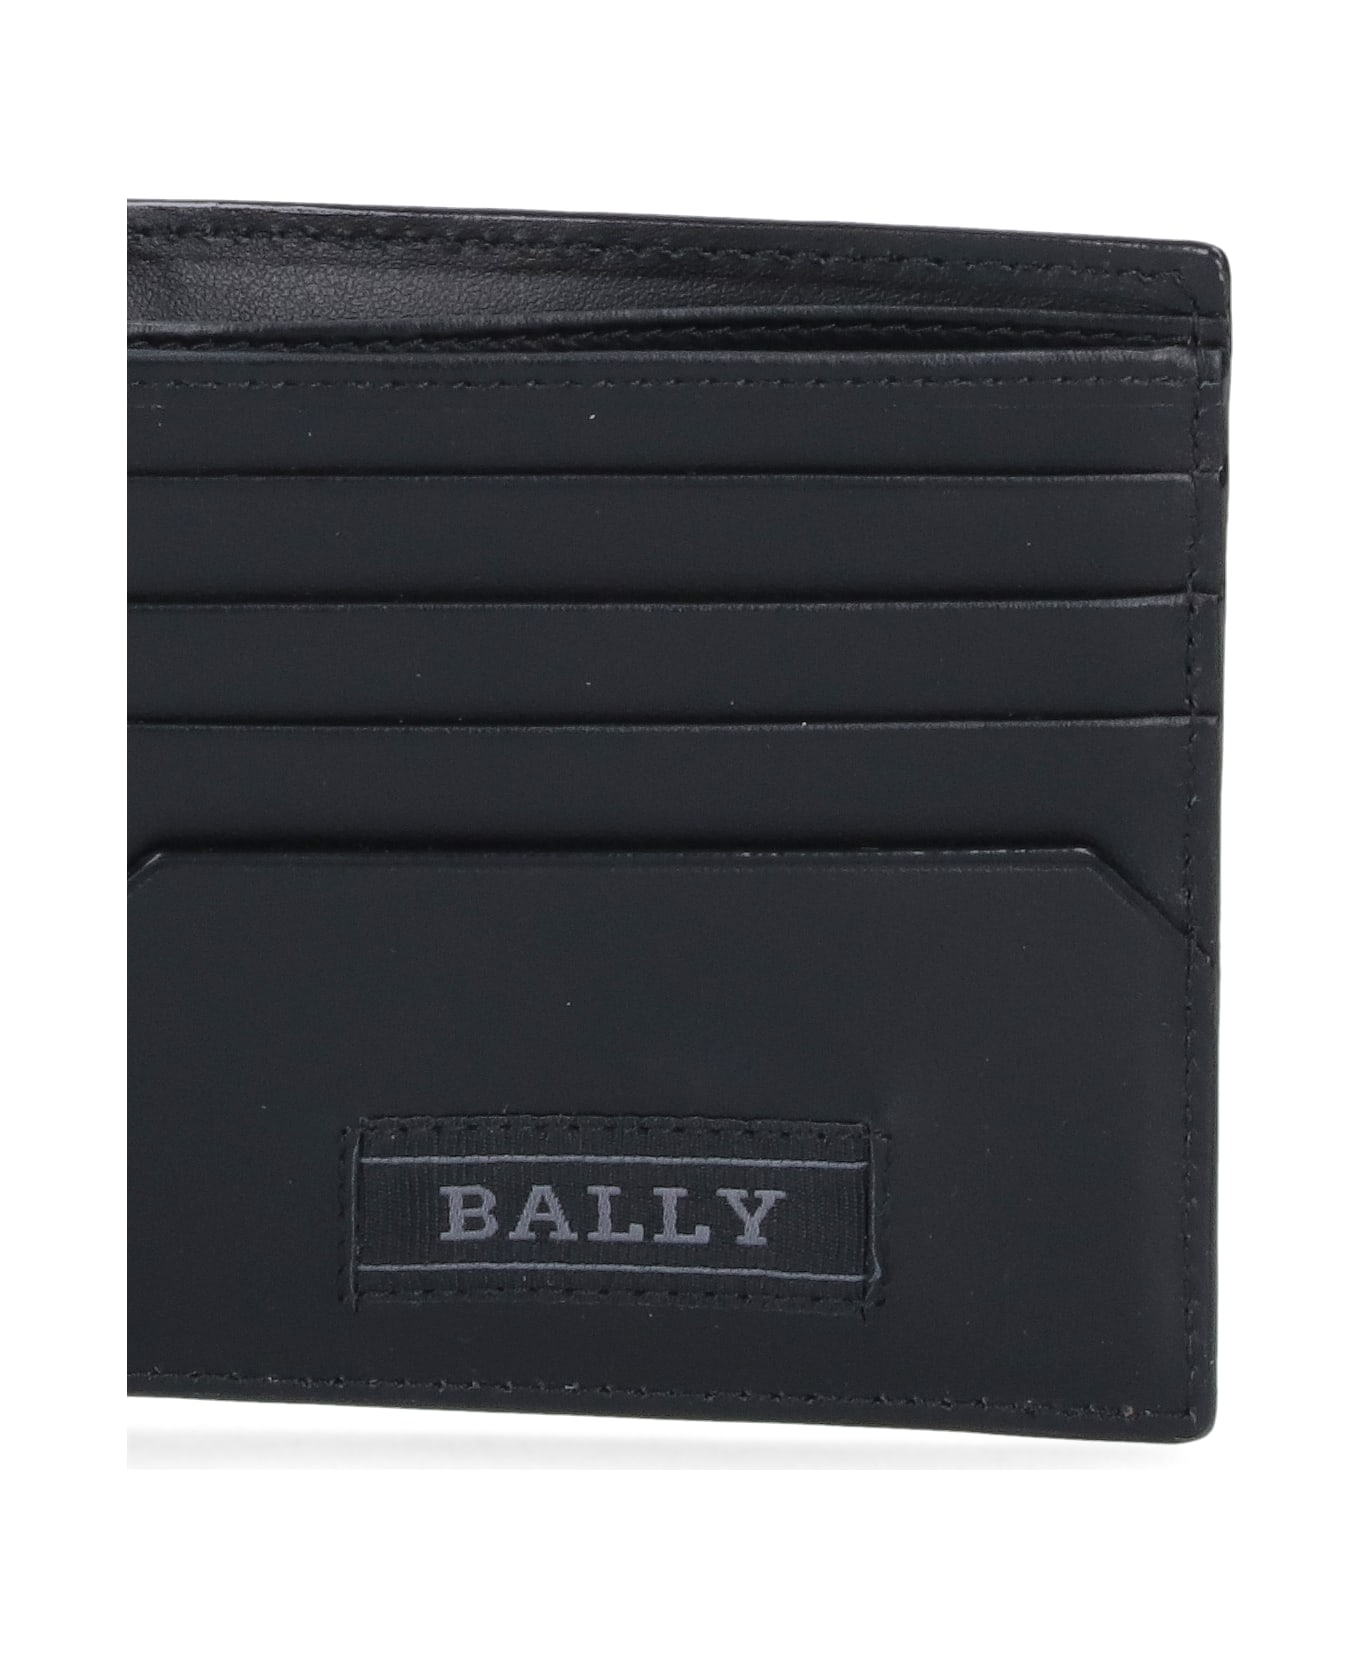 Bally Bi-fold Wallet "brasai" - Black   財布